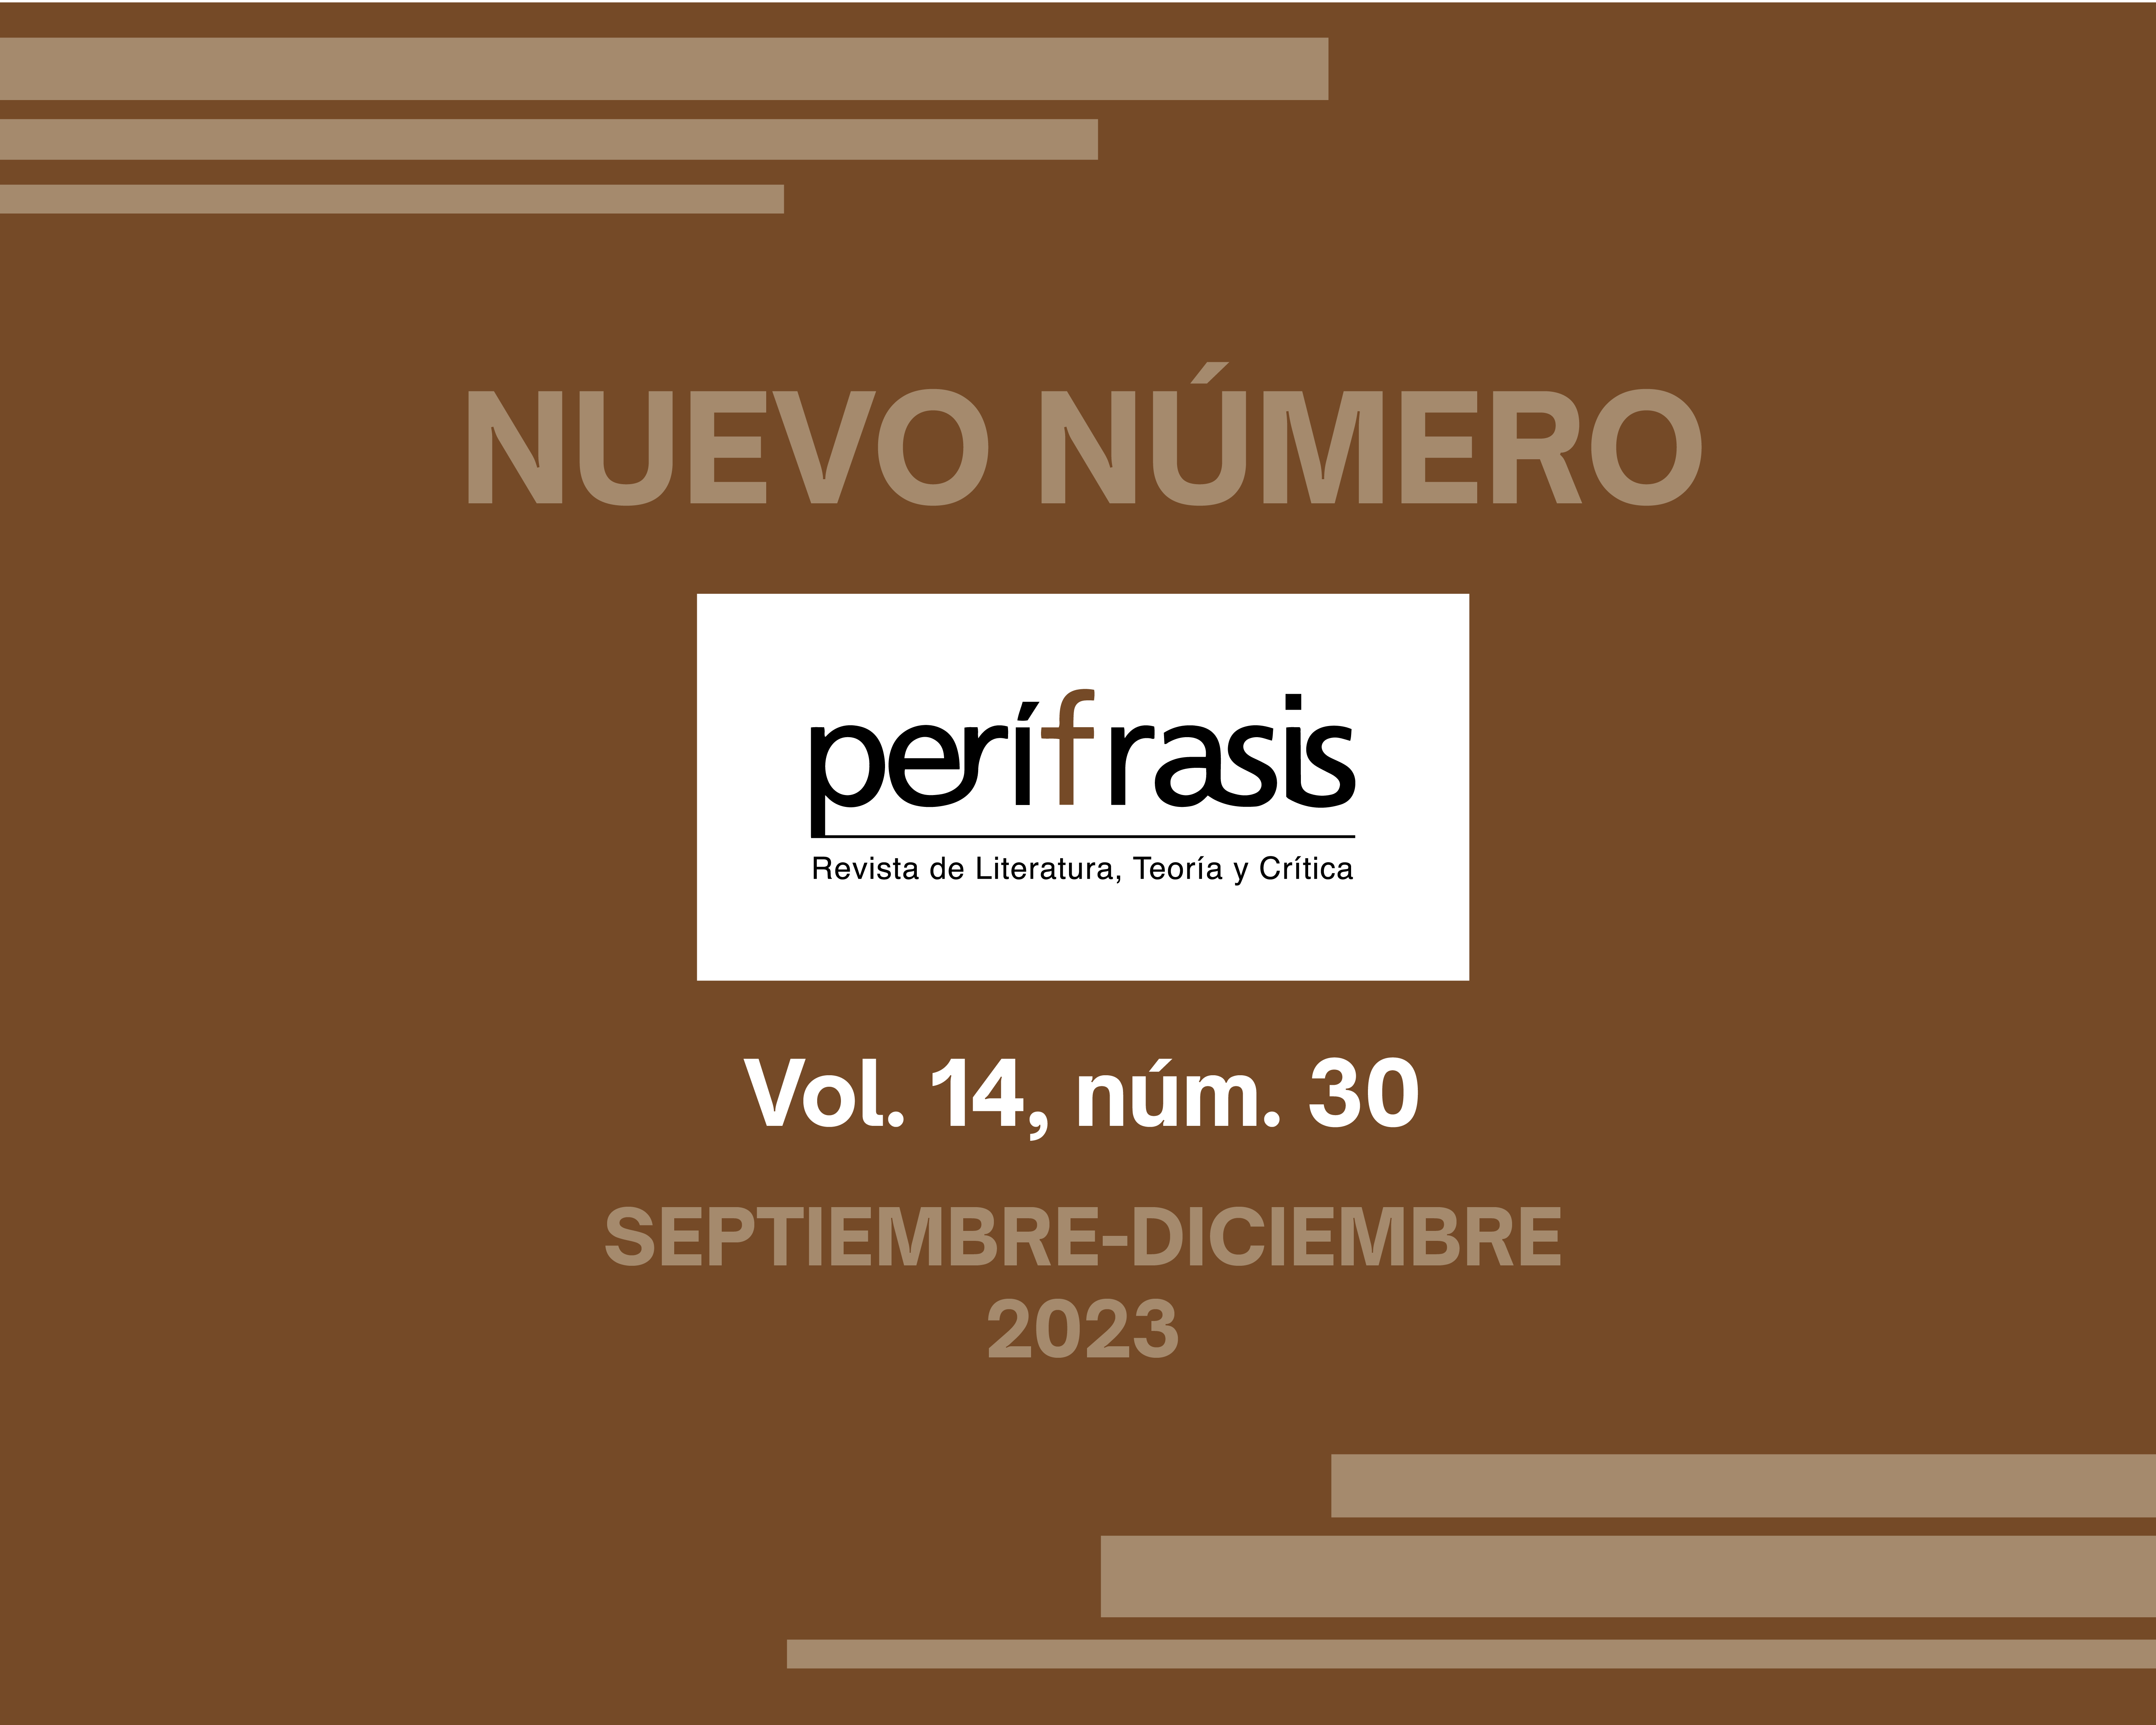 Perífrasis. Revista de Literatura, Teoría y Crítica lanza su número 30